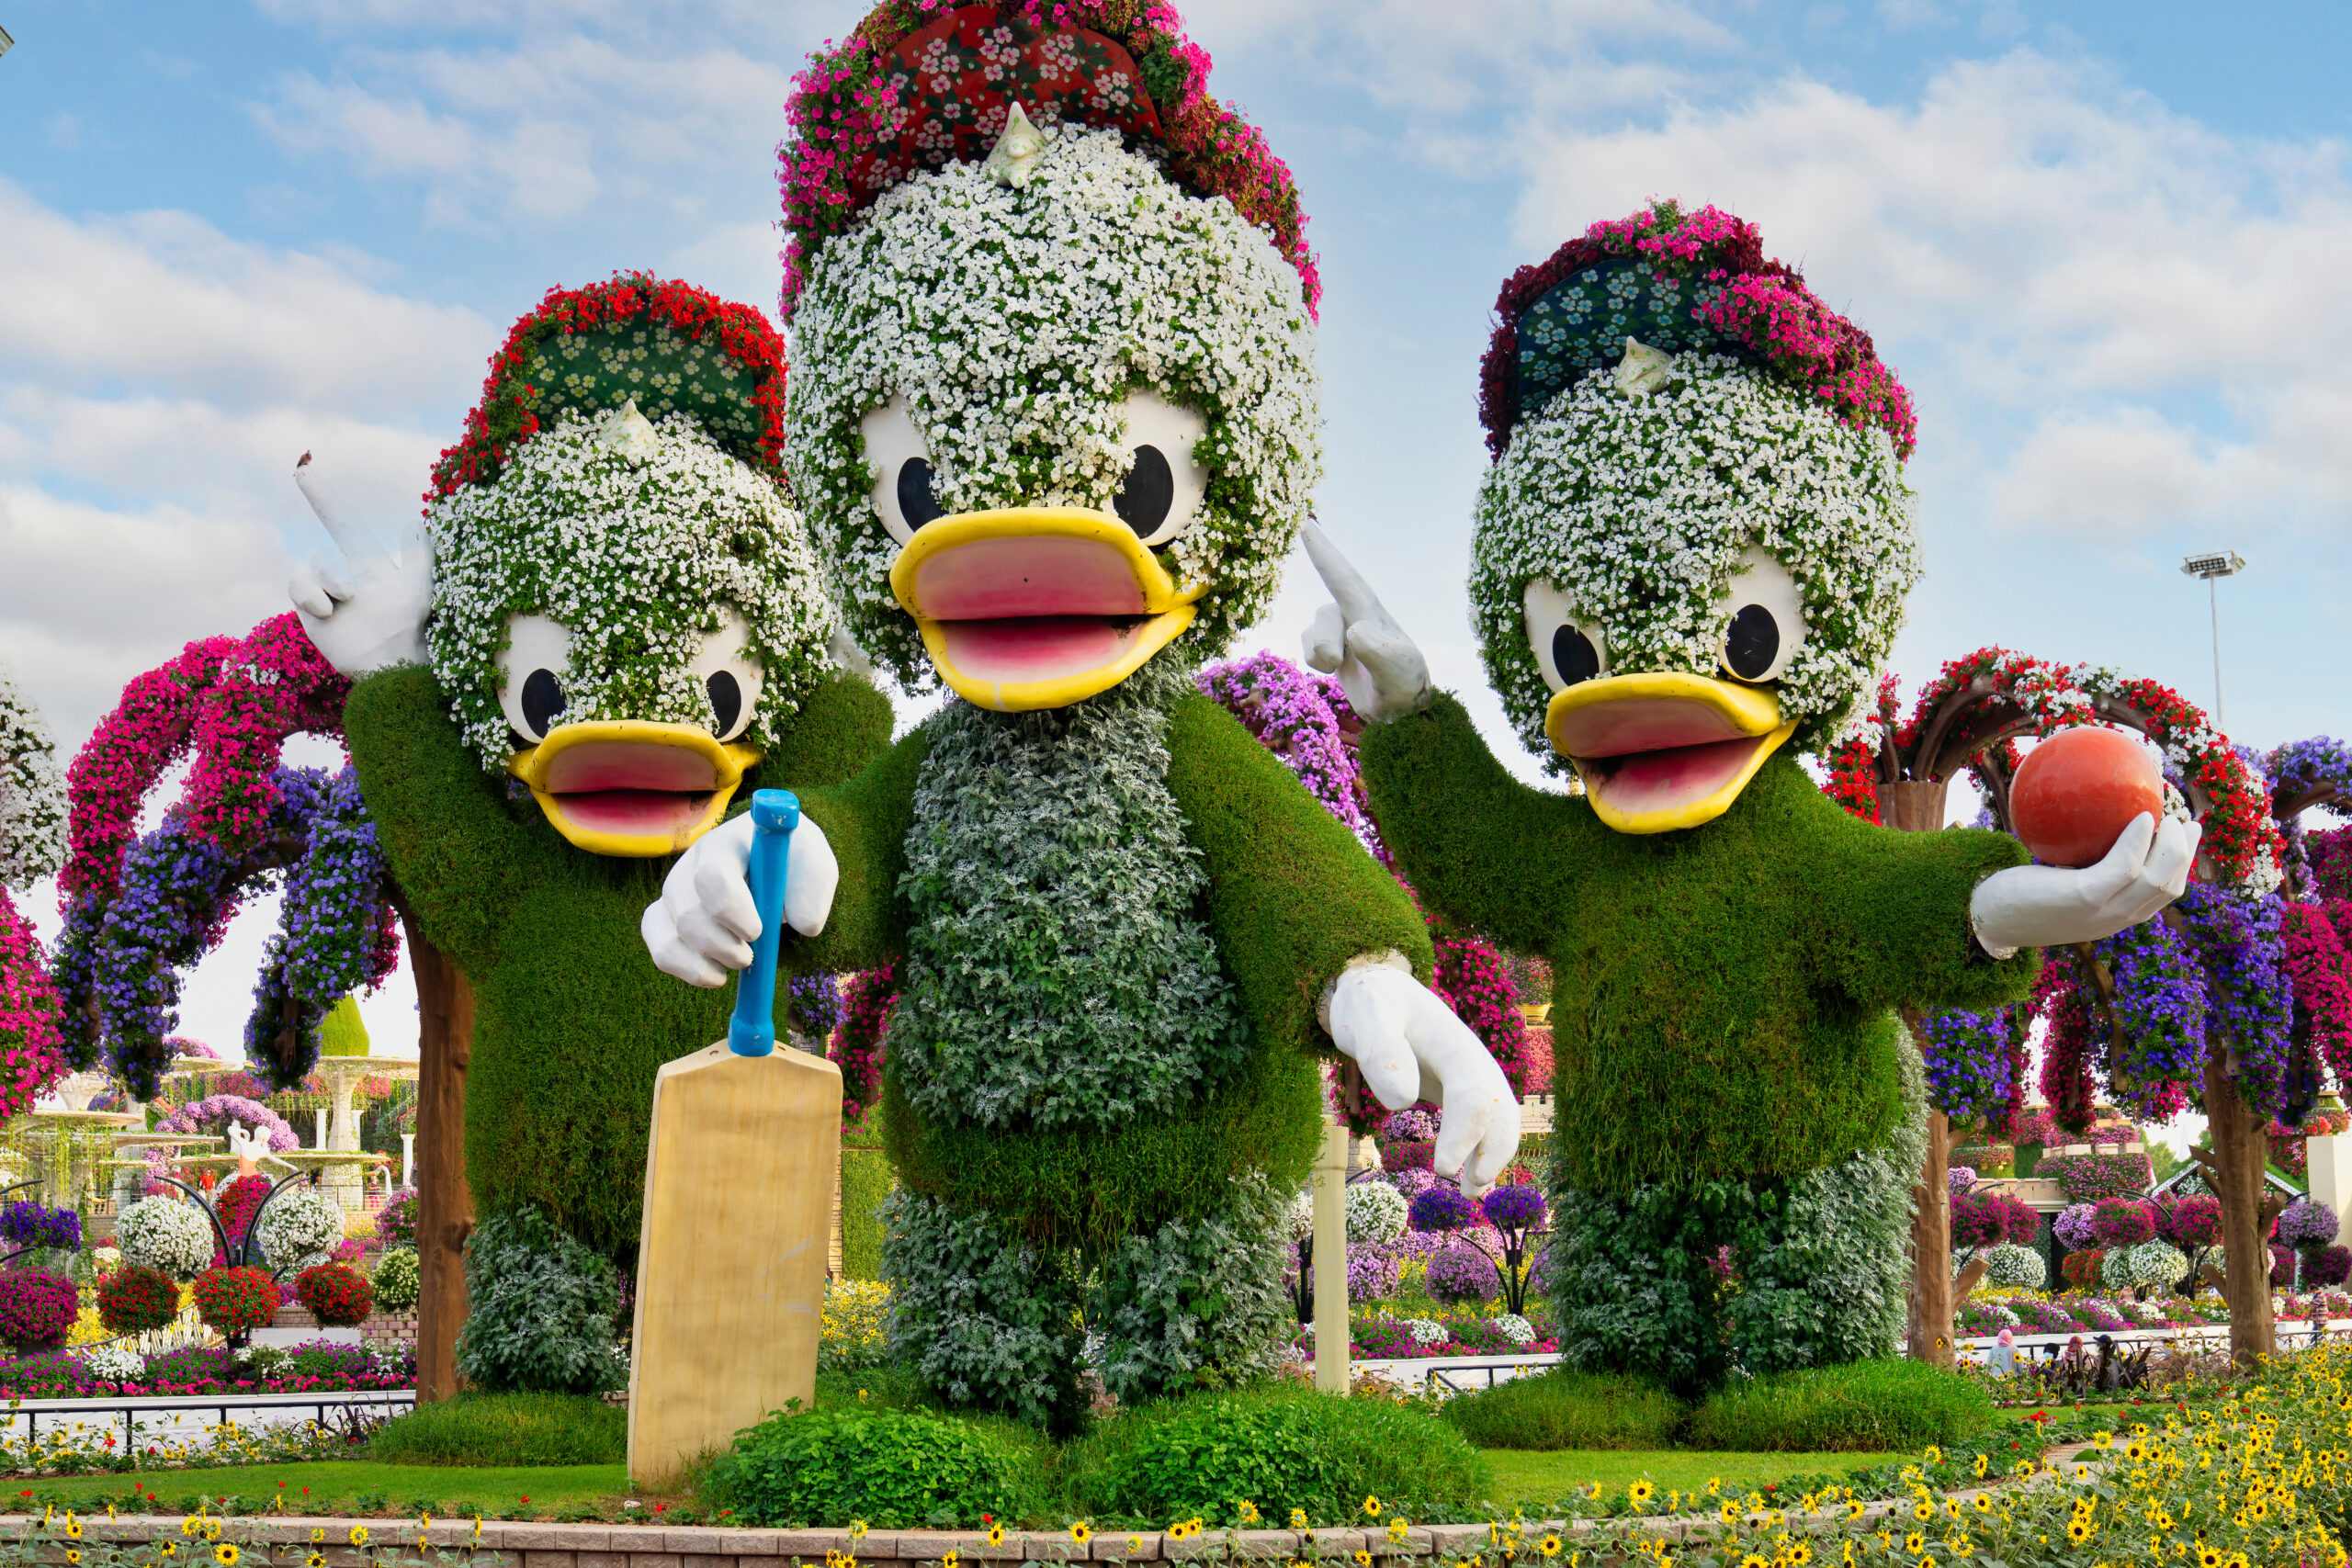 Dubai Miracle Garden - Ducklings